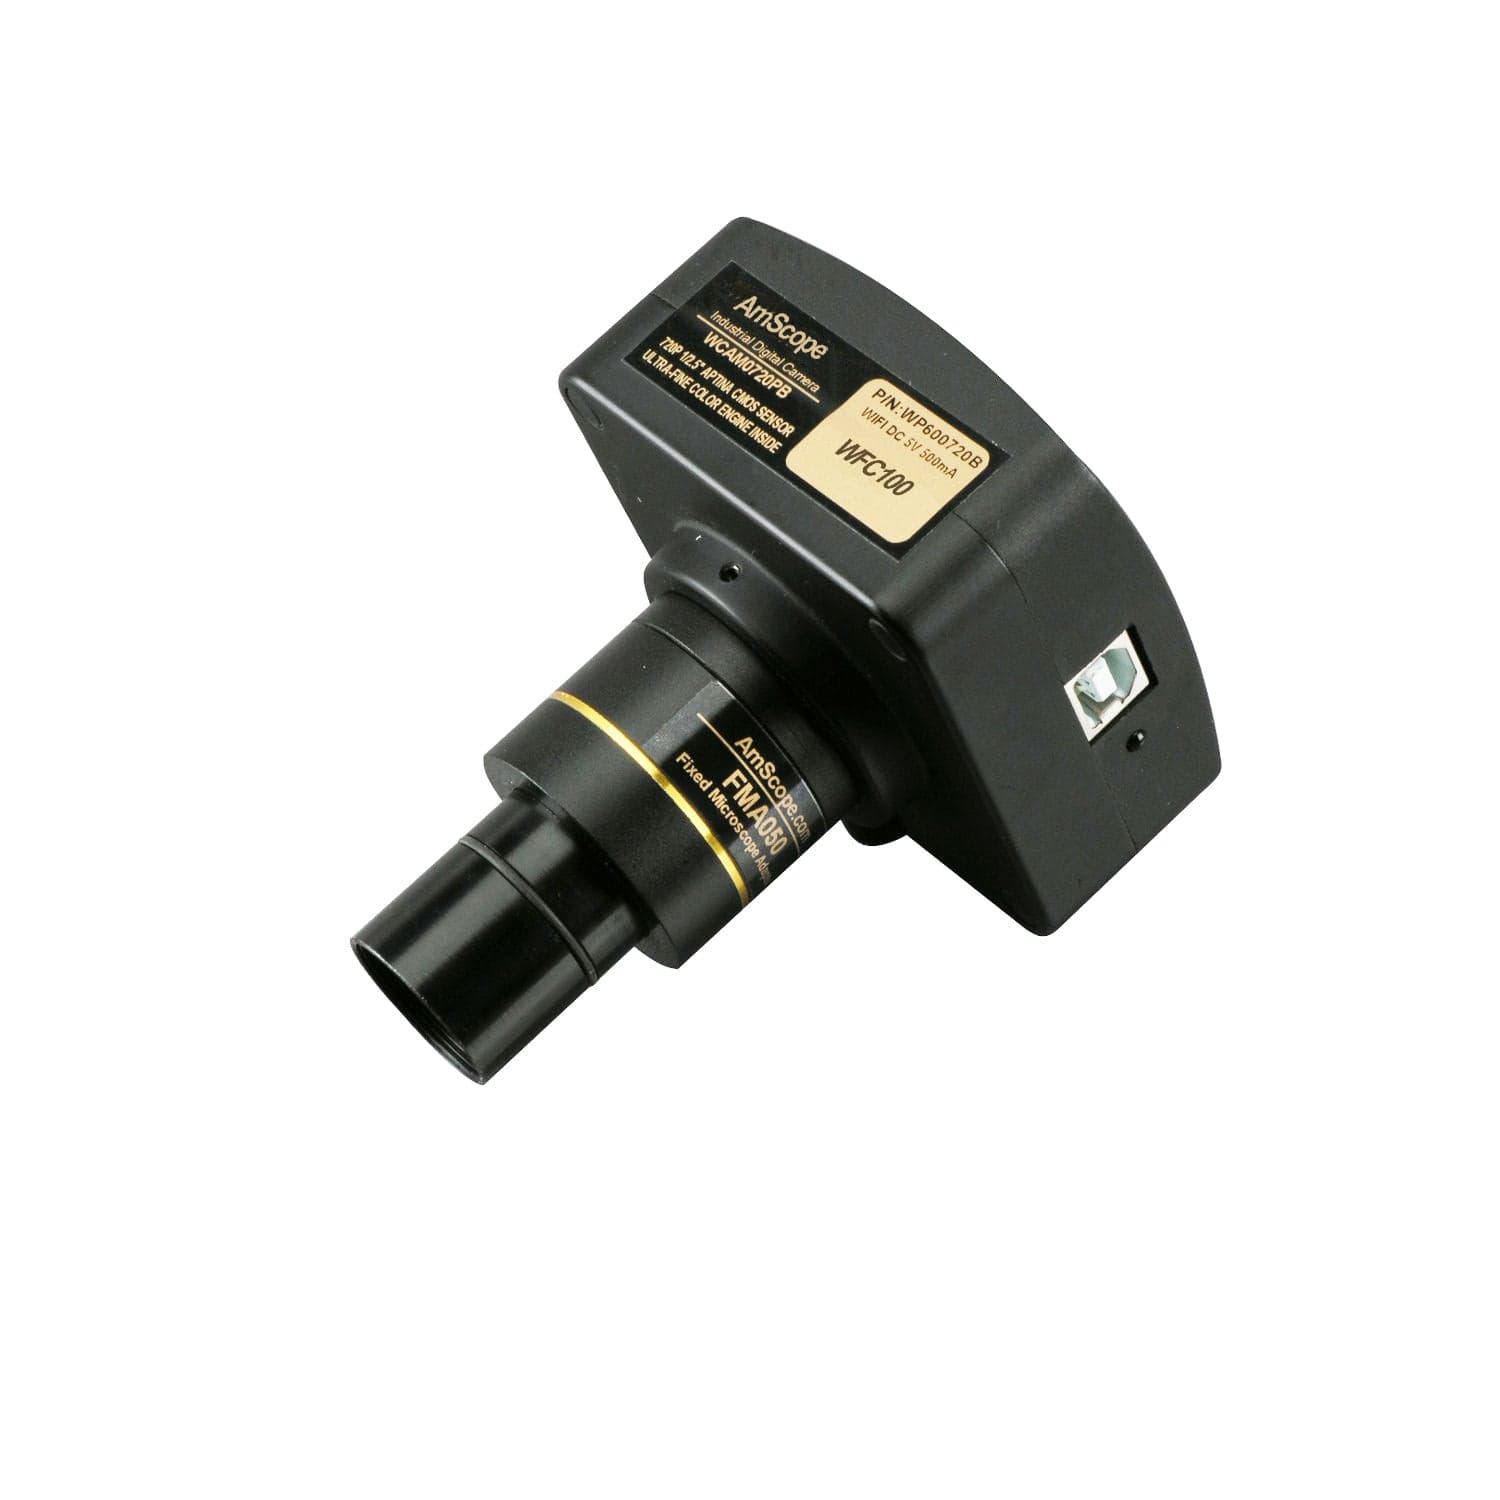 720p Wi-Fi Microscope Digital Camera + Software